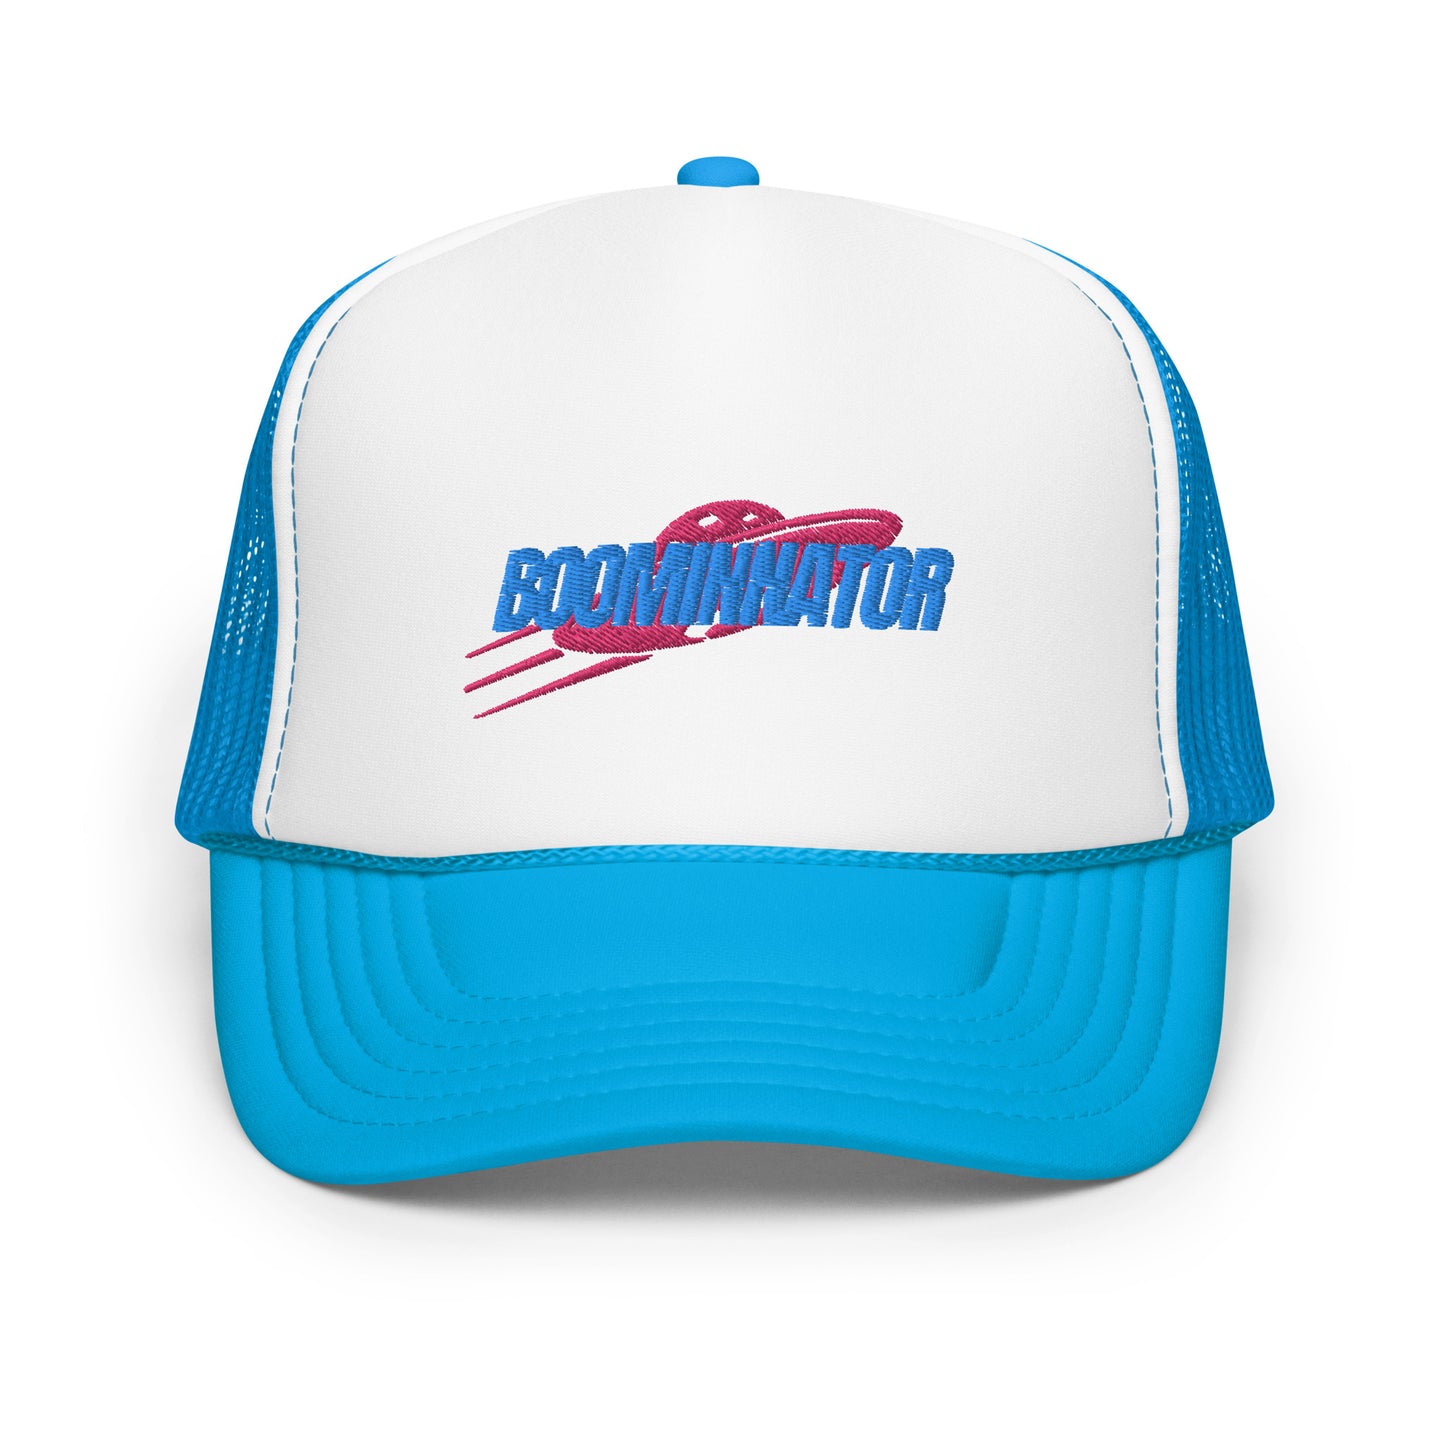 Boominnator big logo foam trucker hat